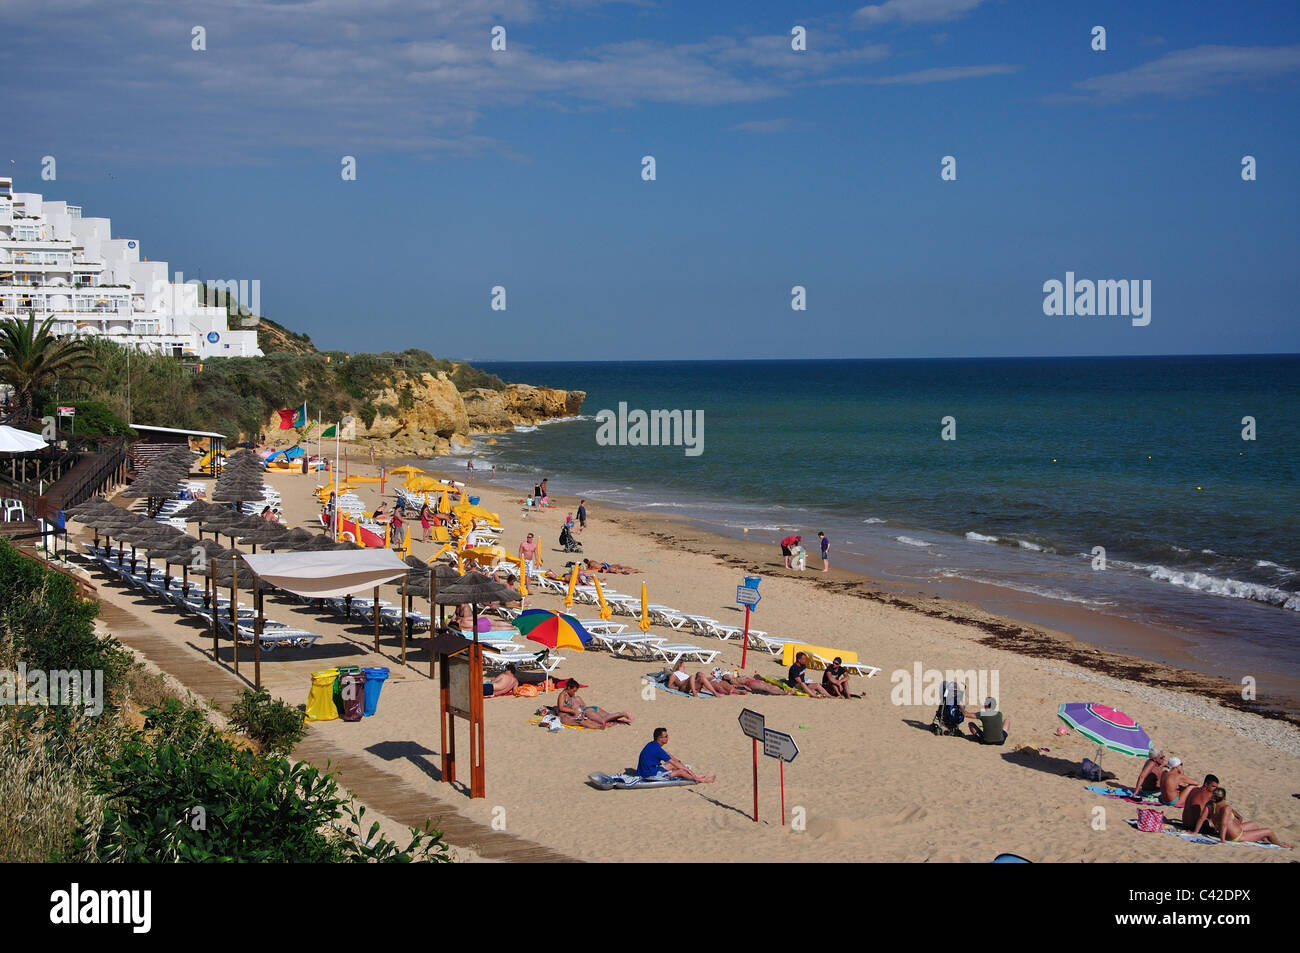 Beach resort vista, Praia da Oura, distretto di Faro, regione di Algarve, PORTOGALLO Foto Stock